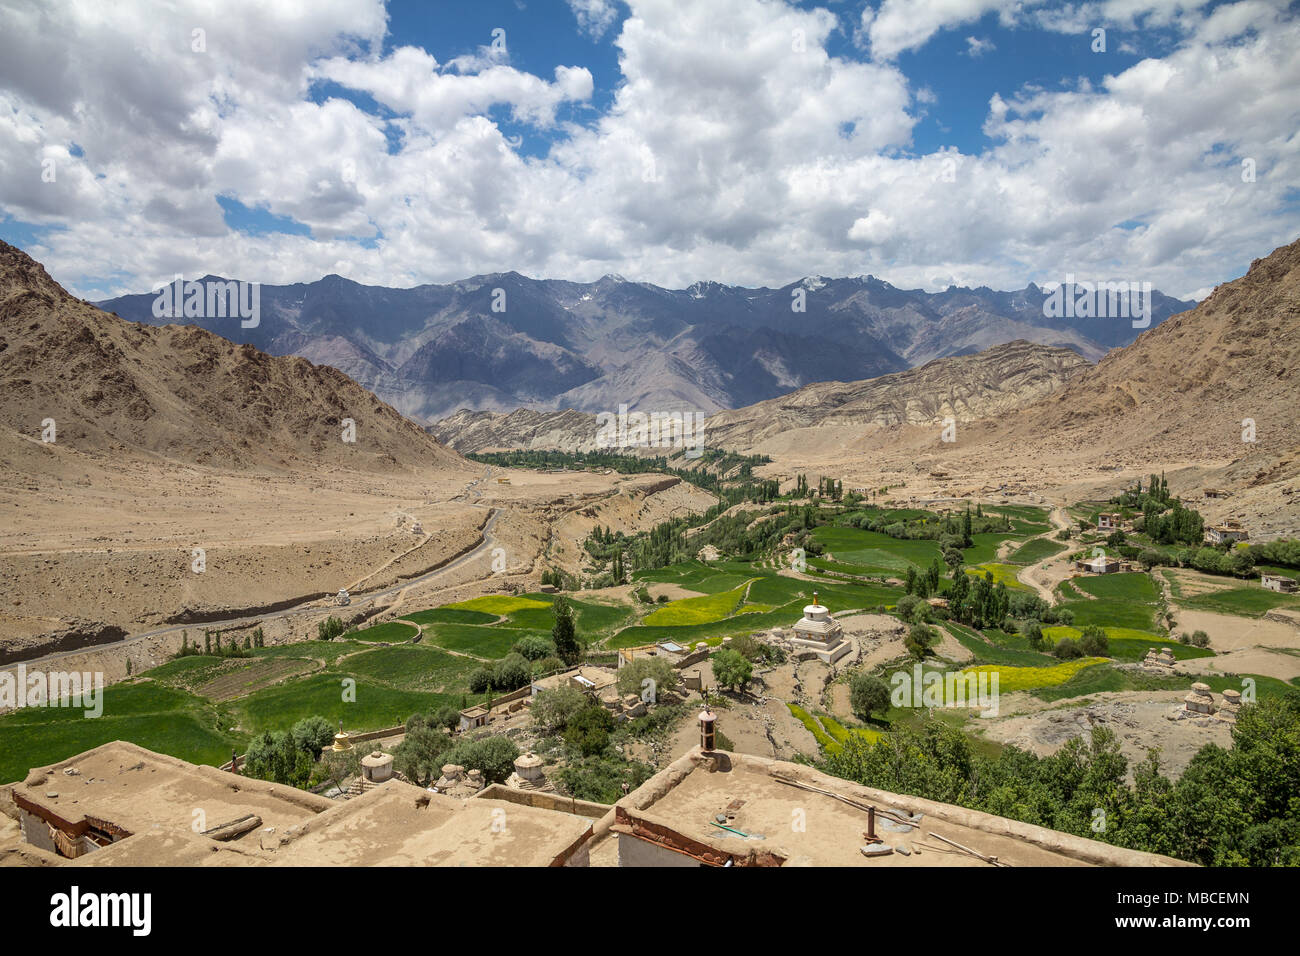 Vue du monastère de Likir est typique pour le Ladakh... bone dry land, sauf là où les arbres et les cultures peuvent se développer en raison de l'humidité à proximité de cours d'eau Banque D'Images